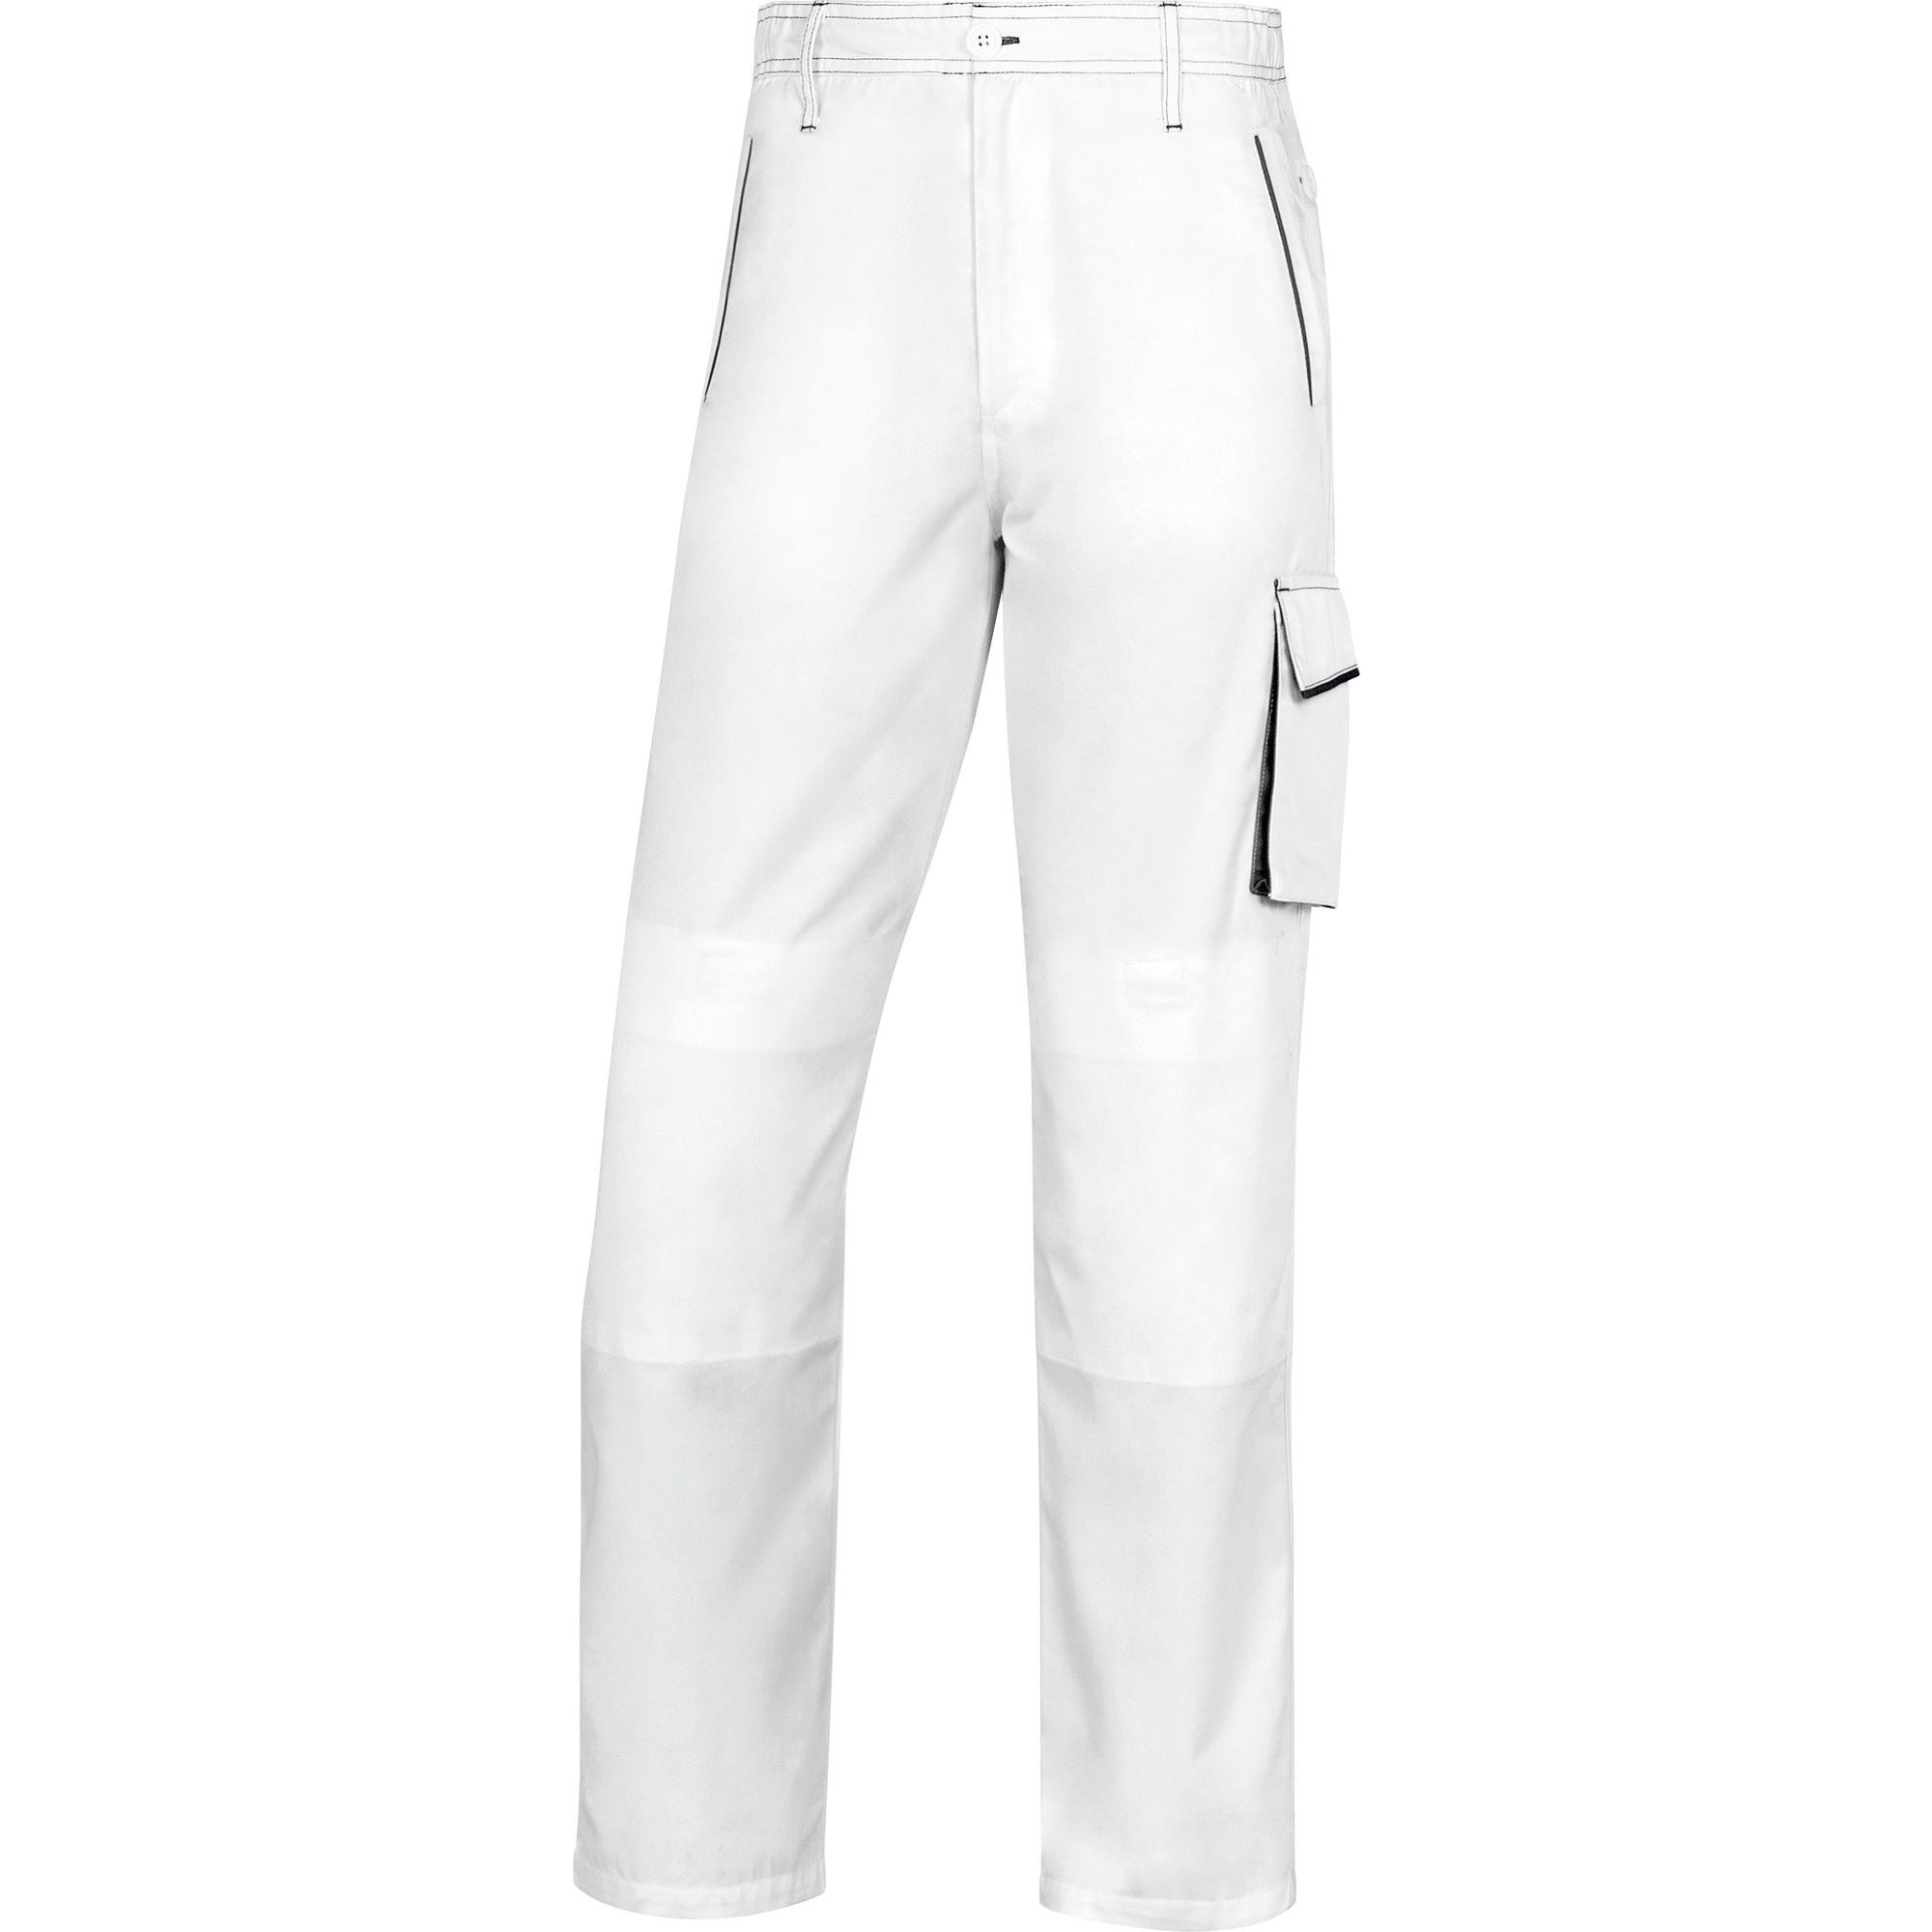 Pantalon de travail blanc/gris T.XXXL PANOSTYLE - DELTA PLUS 0